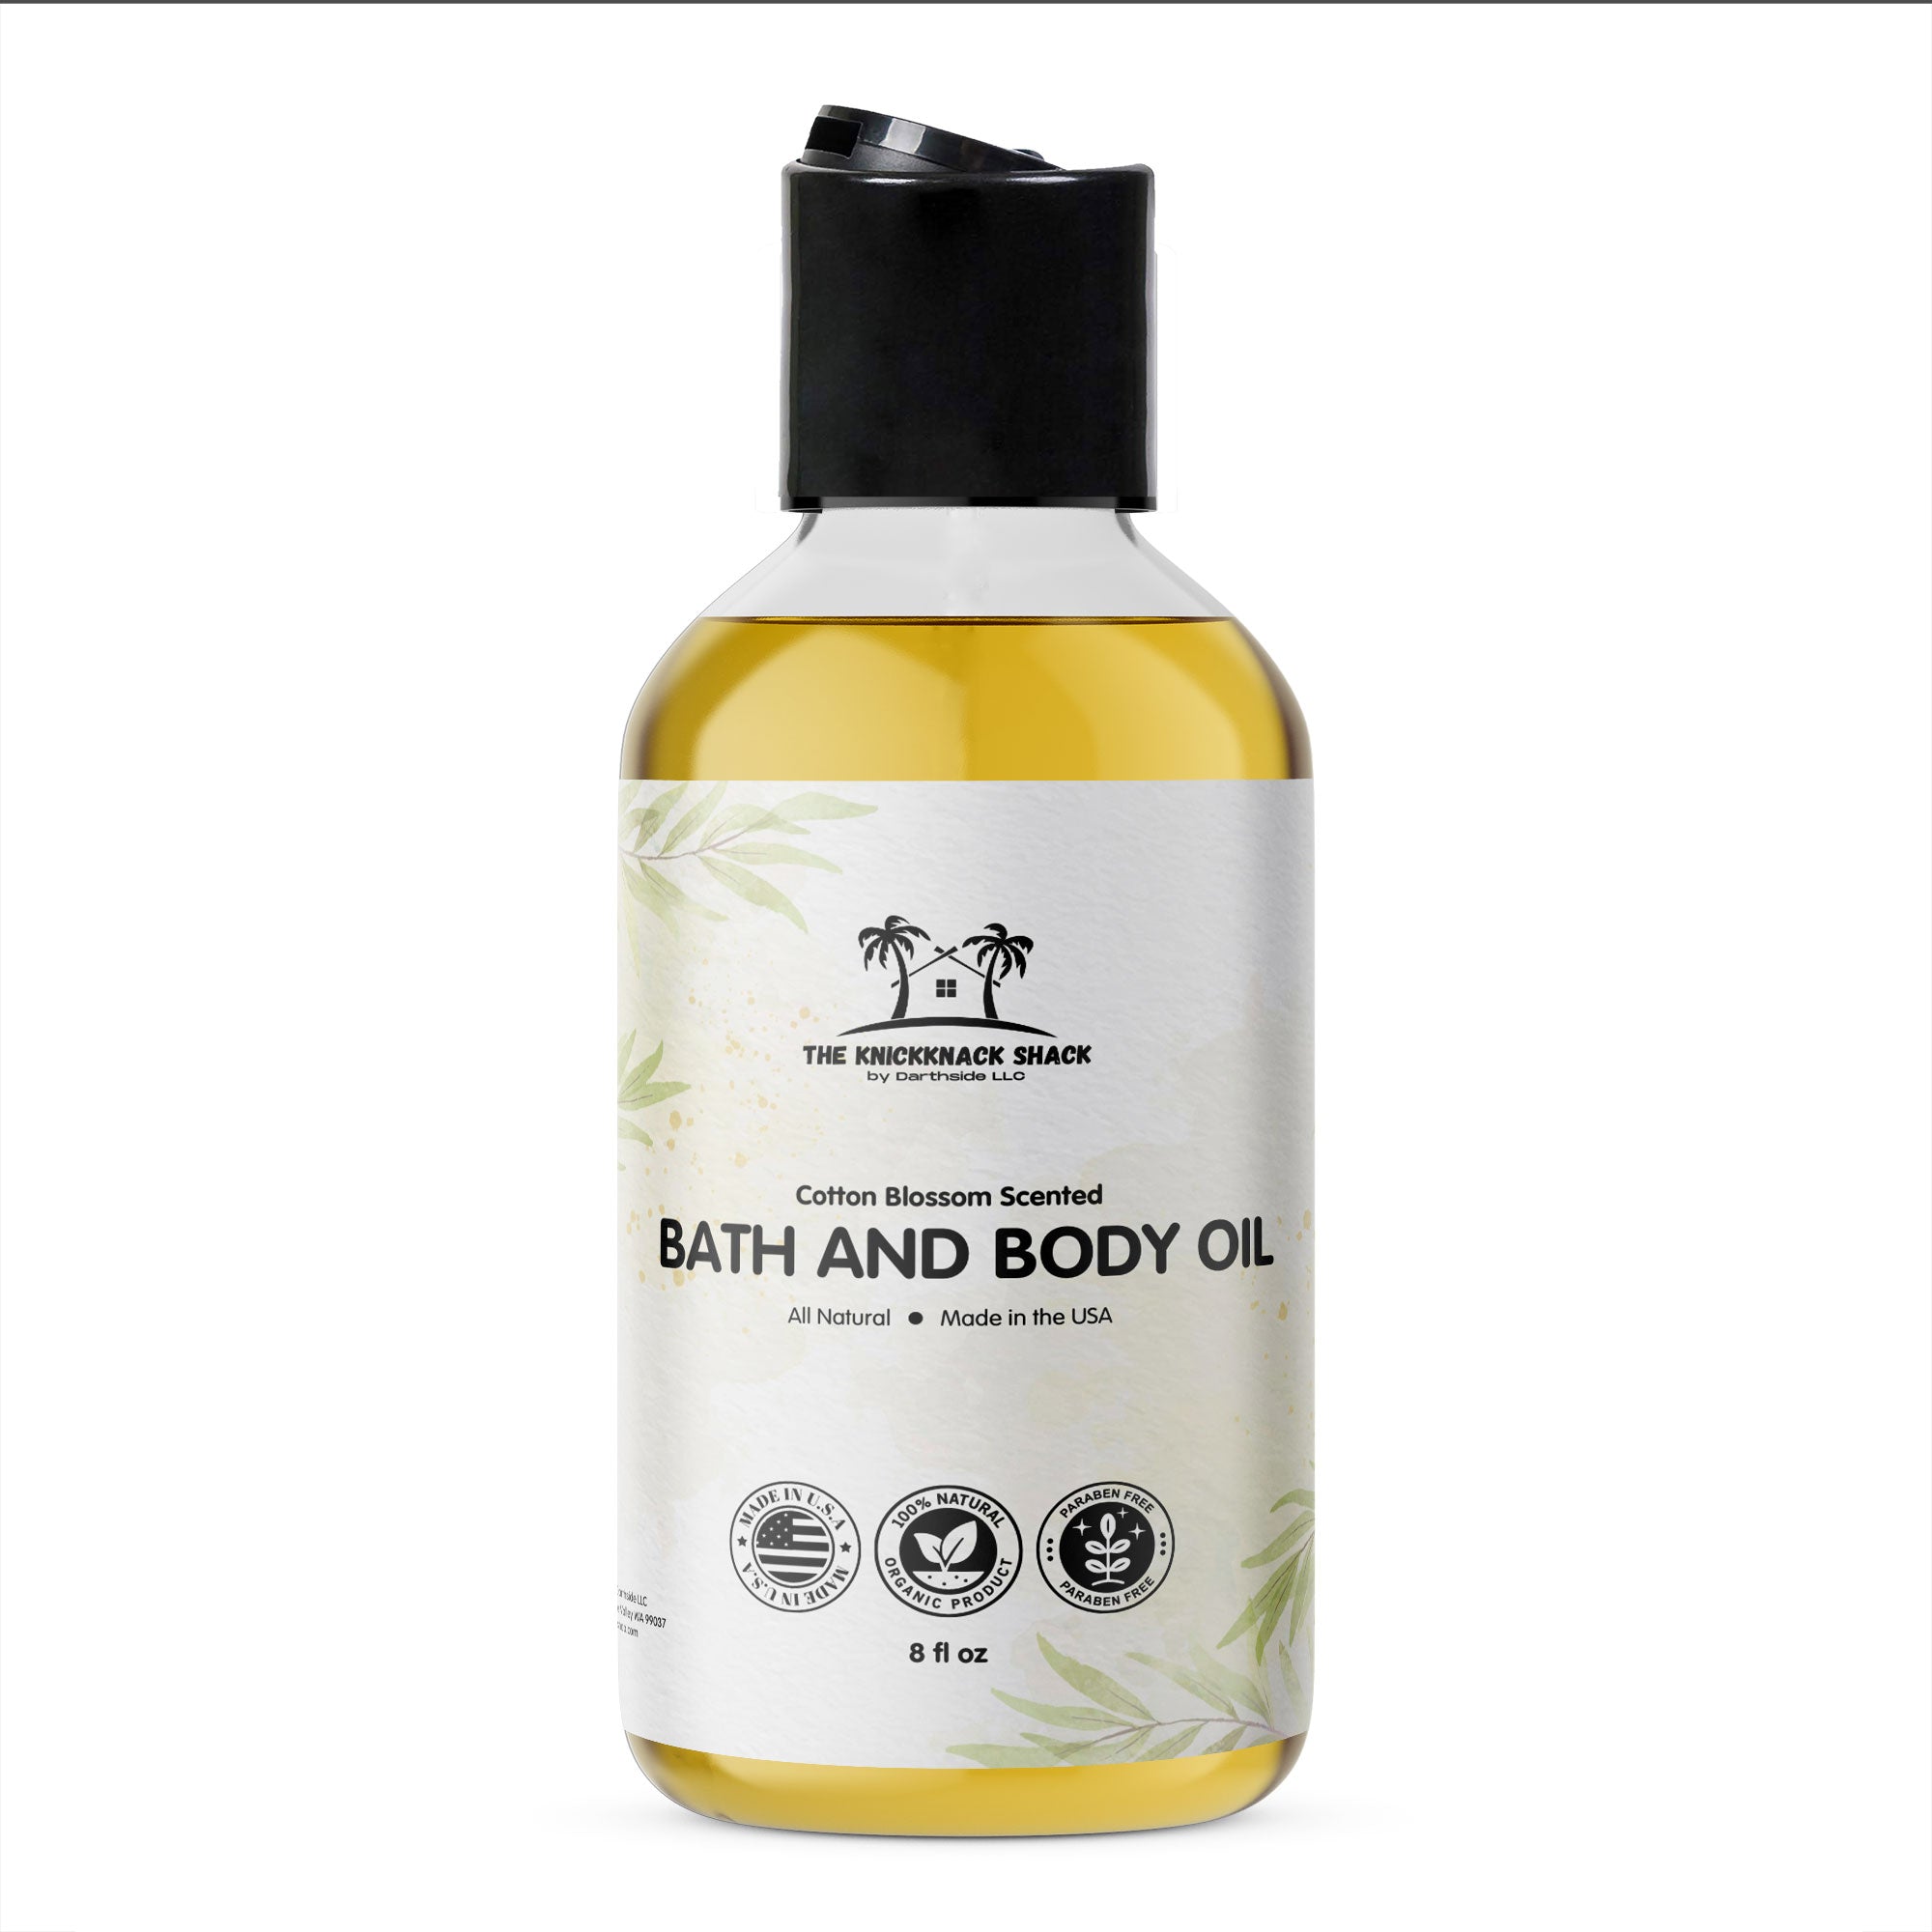 Cotton Blossom Scented Bath and Body Oil